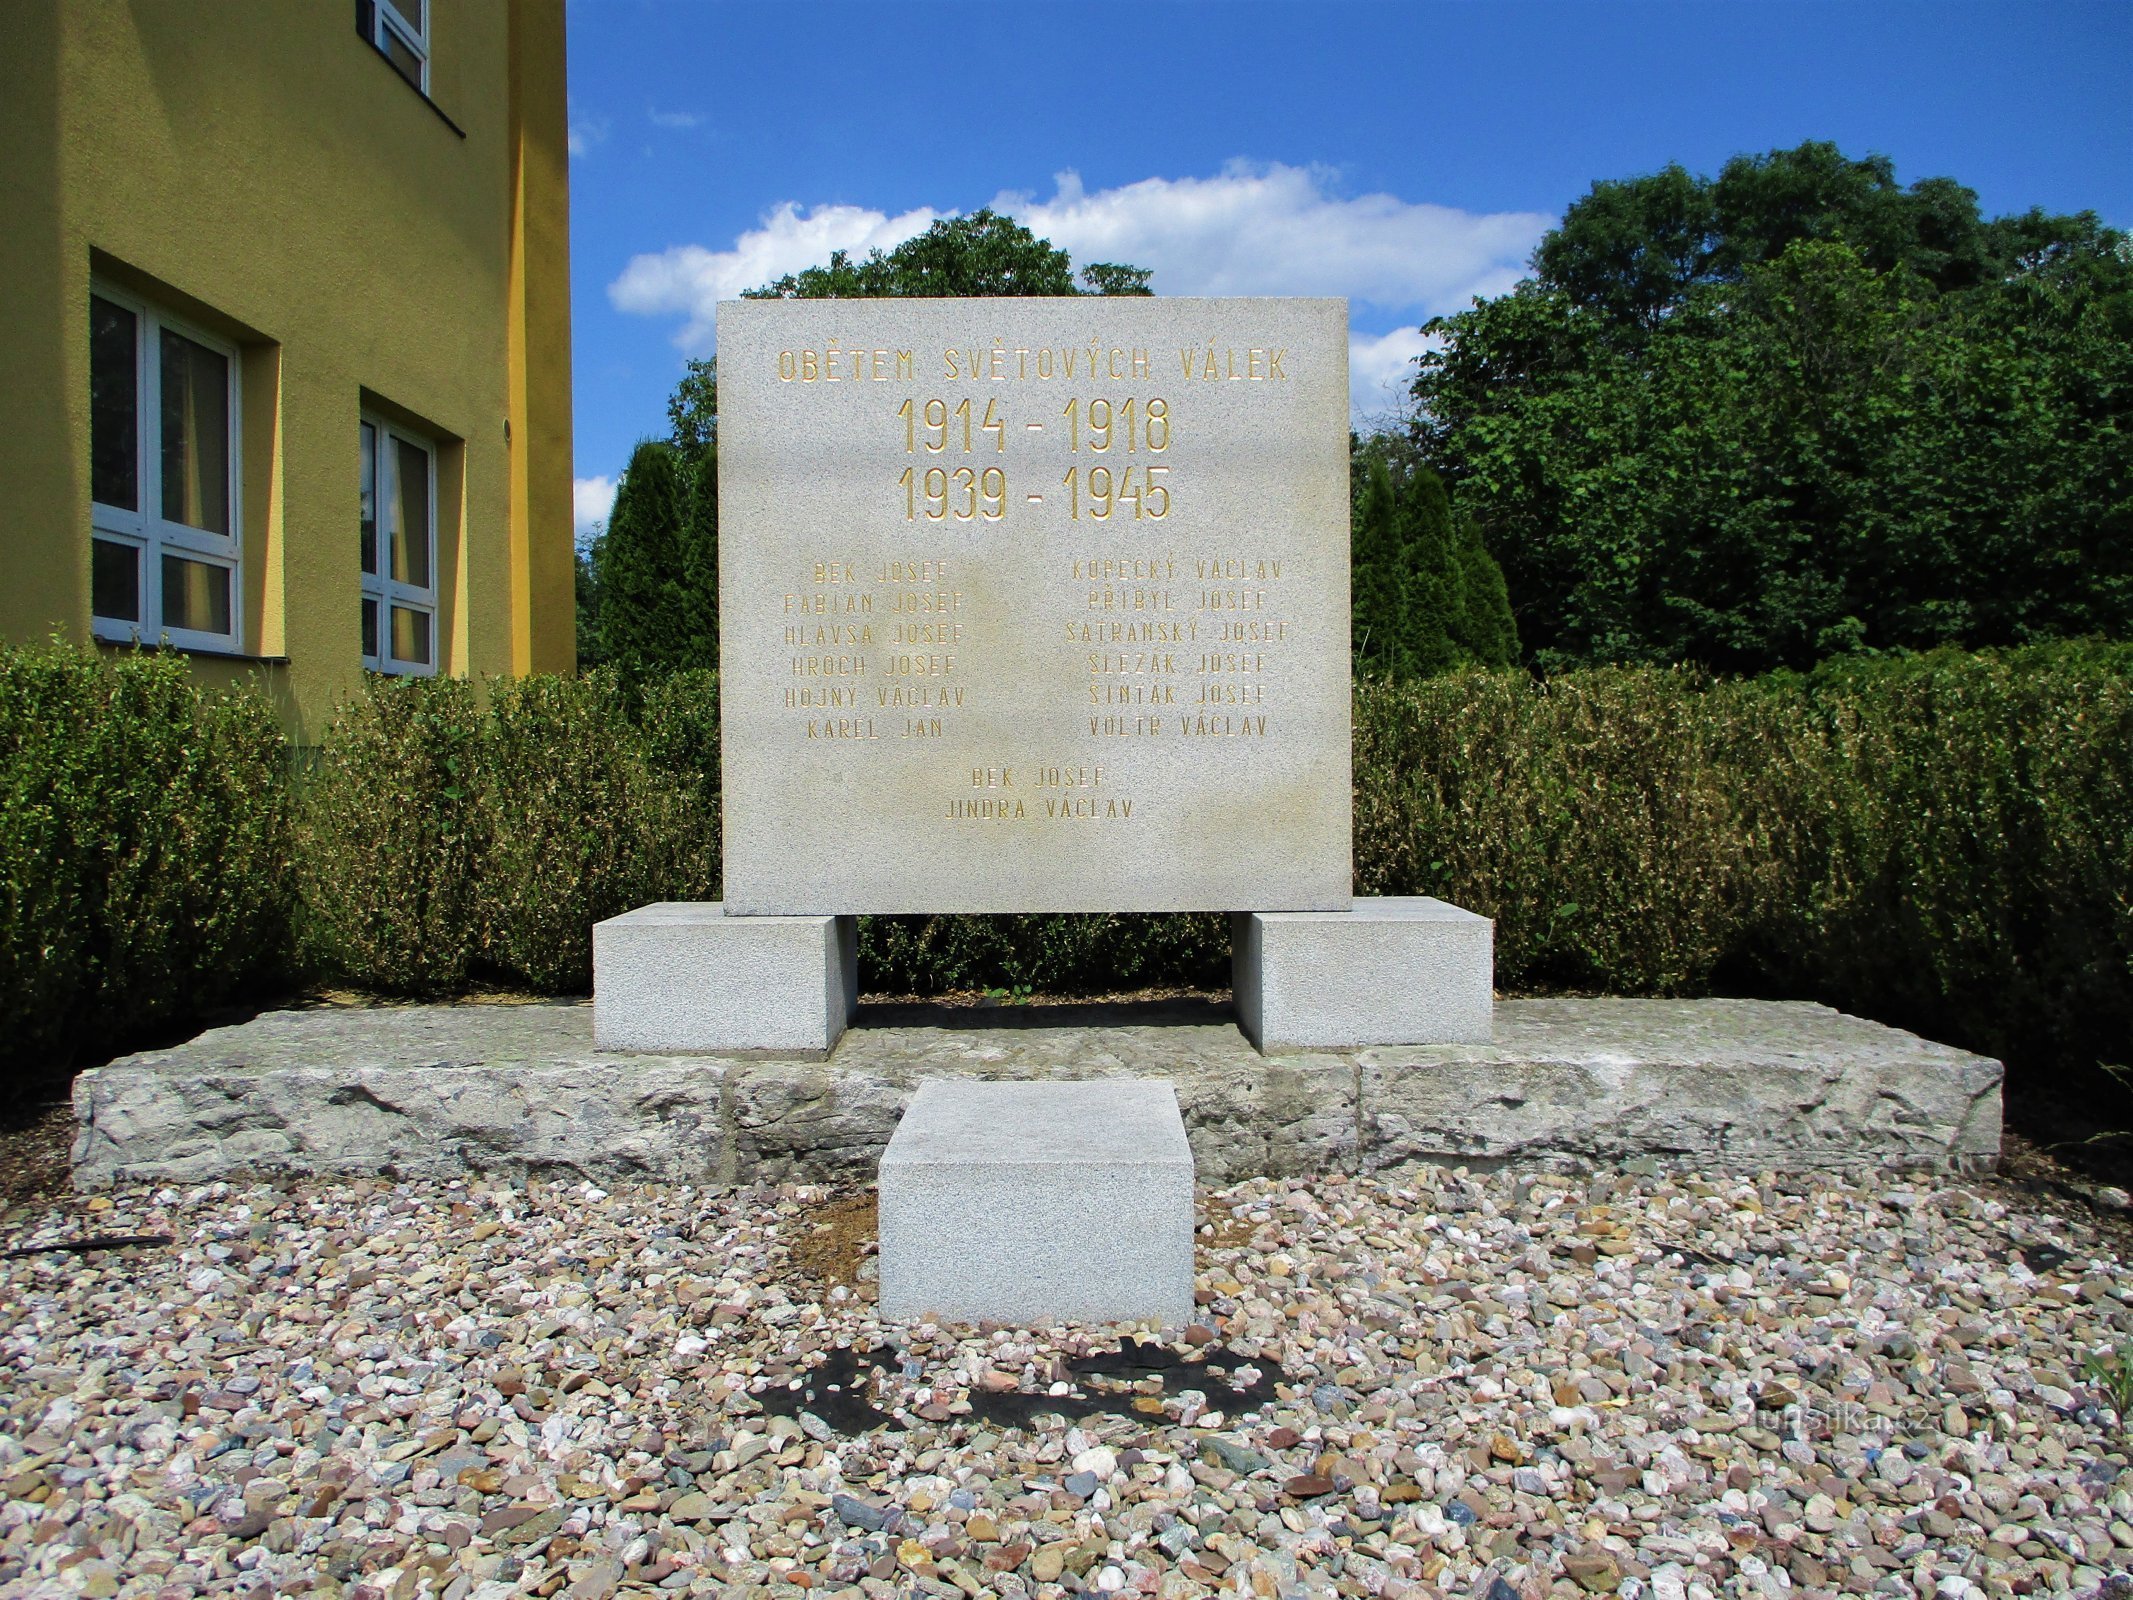 両世界大戦の犠牲者の記念碑 (Výrava、15.6.2020 年 XNUMX 月 XNUMX 日)